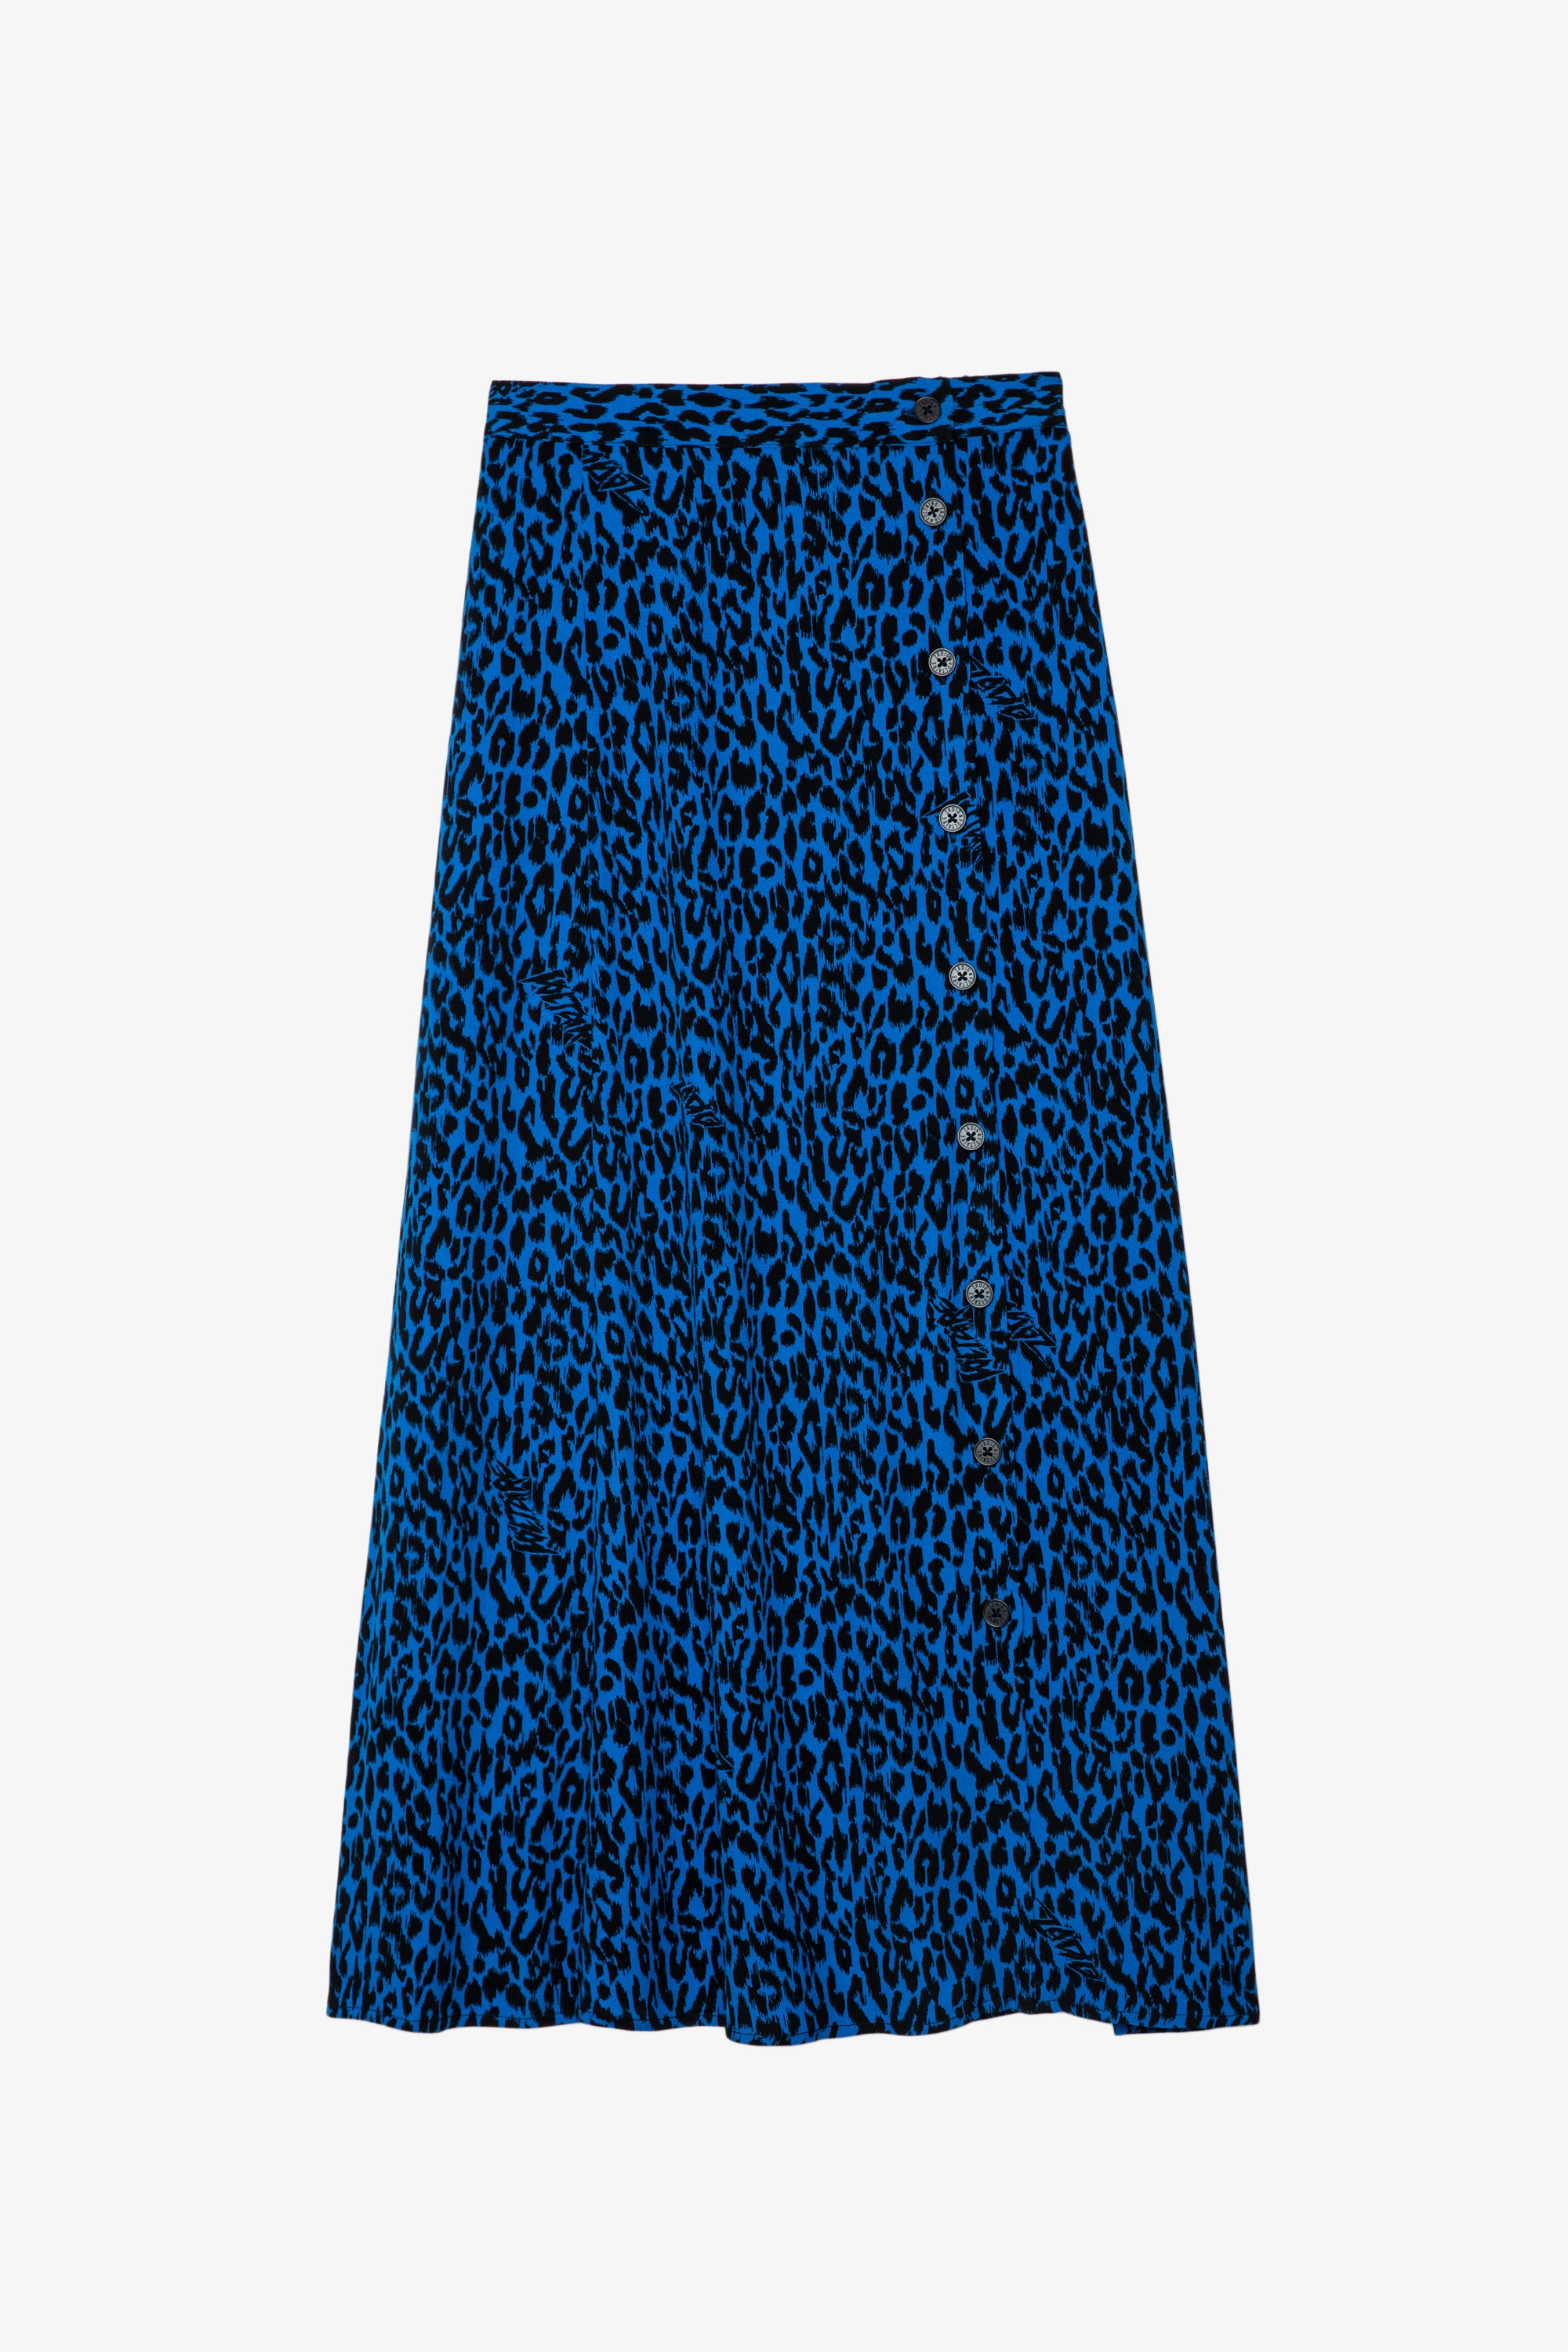 June Skirt Women’s long blue leopard-print skirt